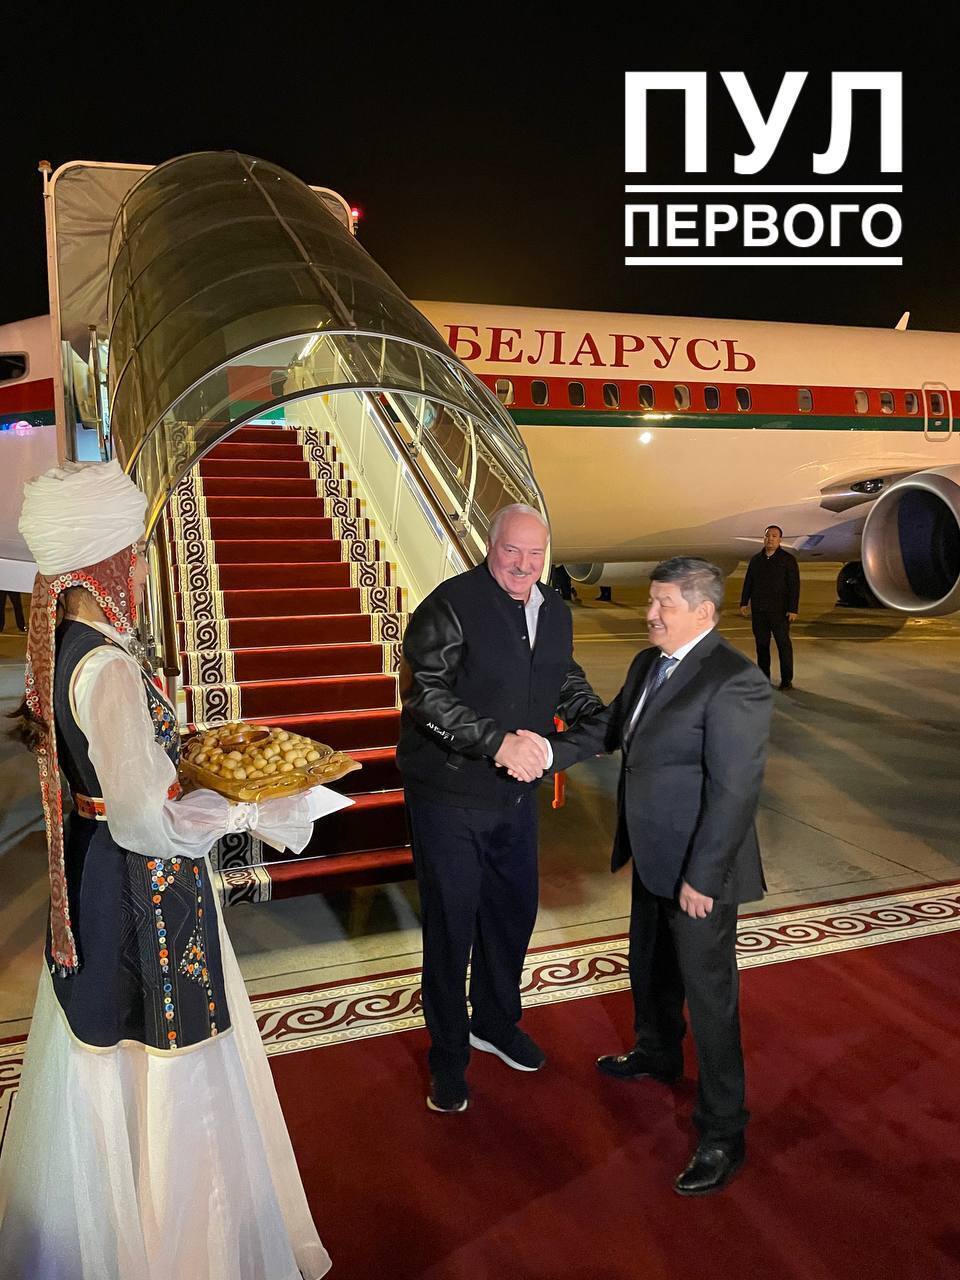 Лукашенко конфузом в Бишкеке подогрел слухи о своей болезни: что произошло. Видео